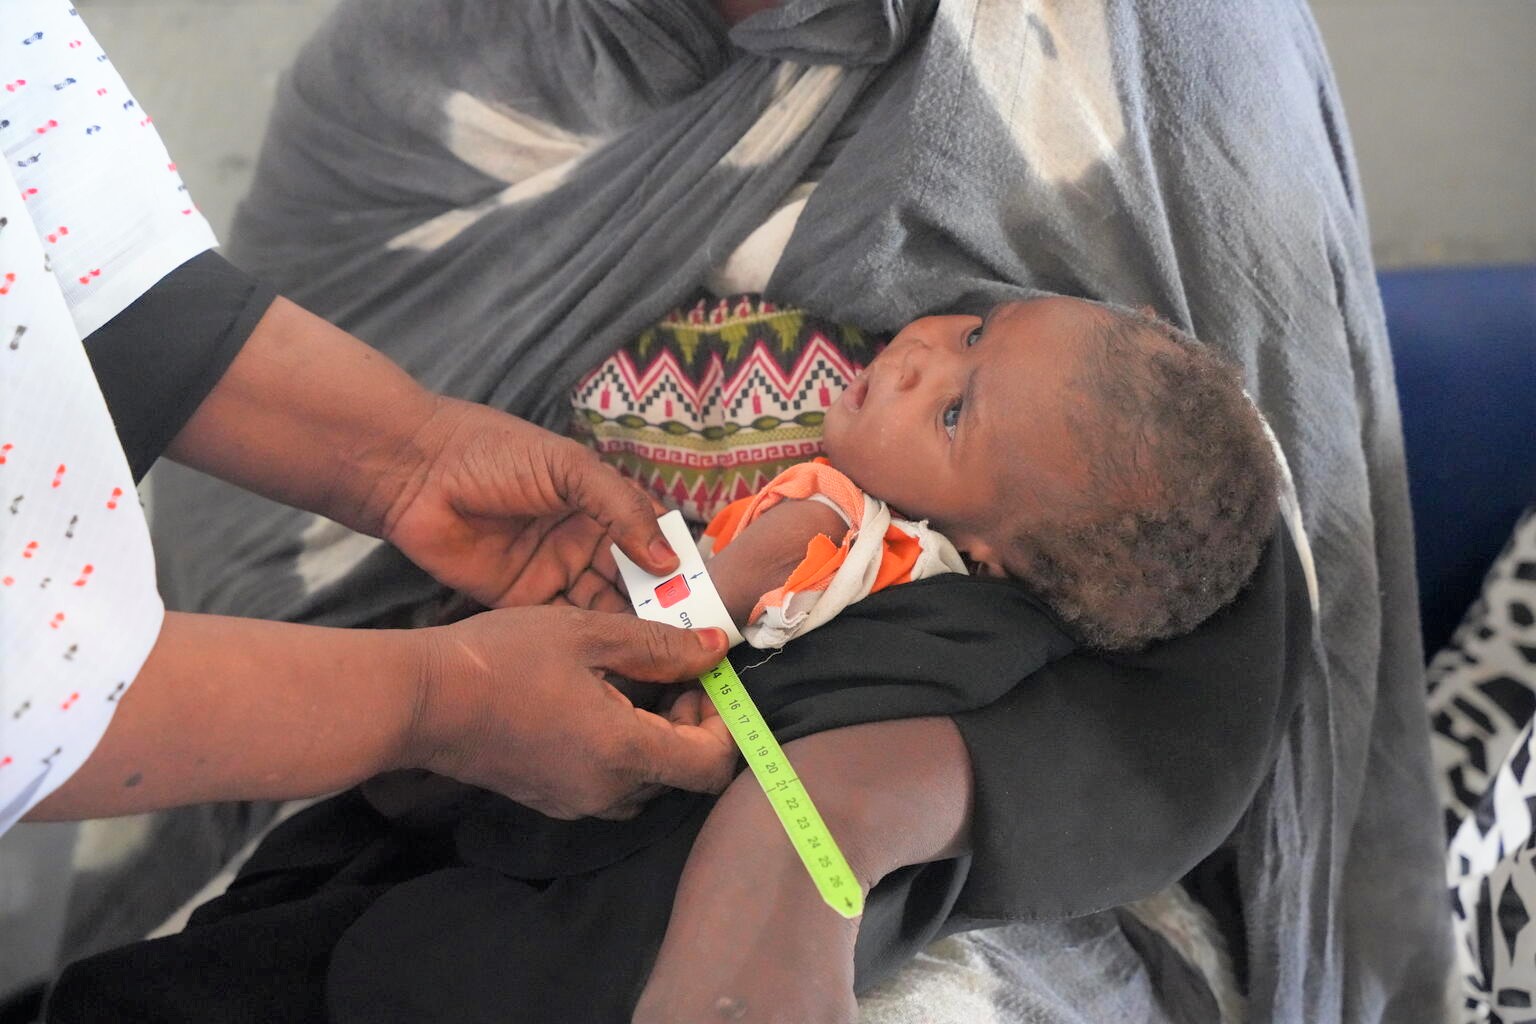 保健センターで、上腕計測メジャーを使った検査により栄養不良と診断された生後8カ月のモハメドちゃん。ハルツームから逃れてきた母親は「母乳が出なくなってしまった」と話す。(スーダン、2023年7月4日撮影)